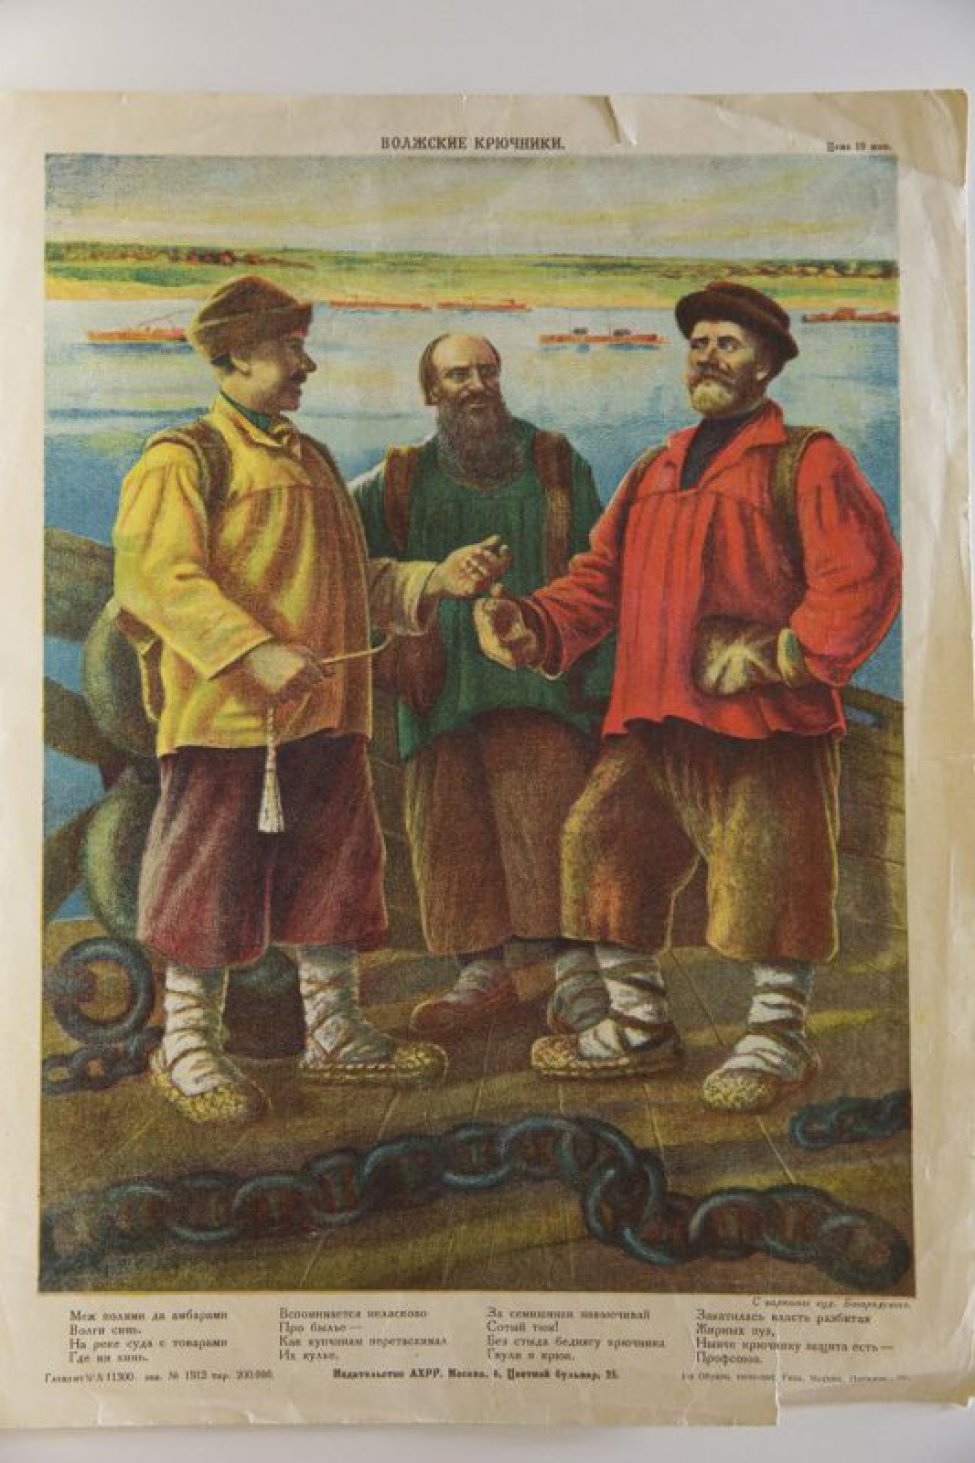 В центре изображены в рост трое мужчин в лаптях, стоящие на деревянном настиле. За ними видна река с баржами, противоположный зеленый берег.